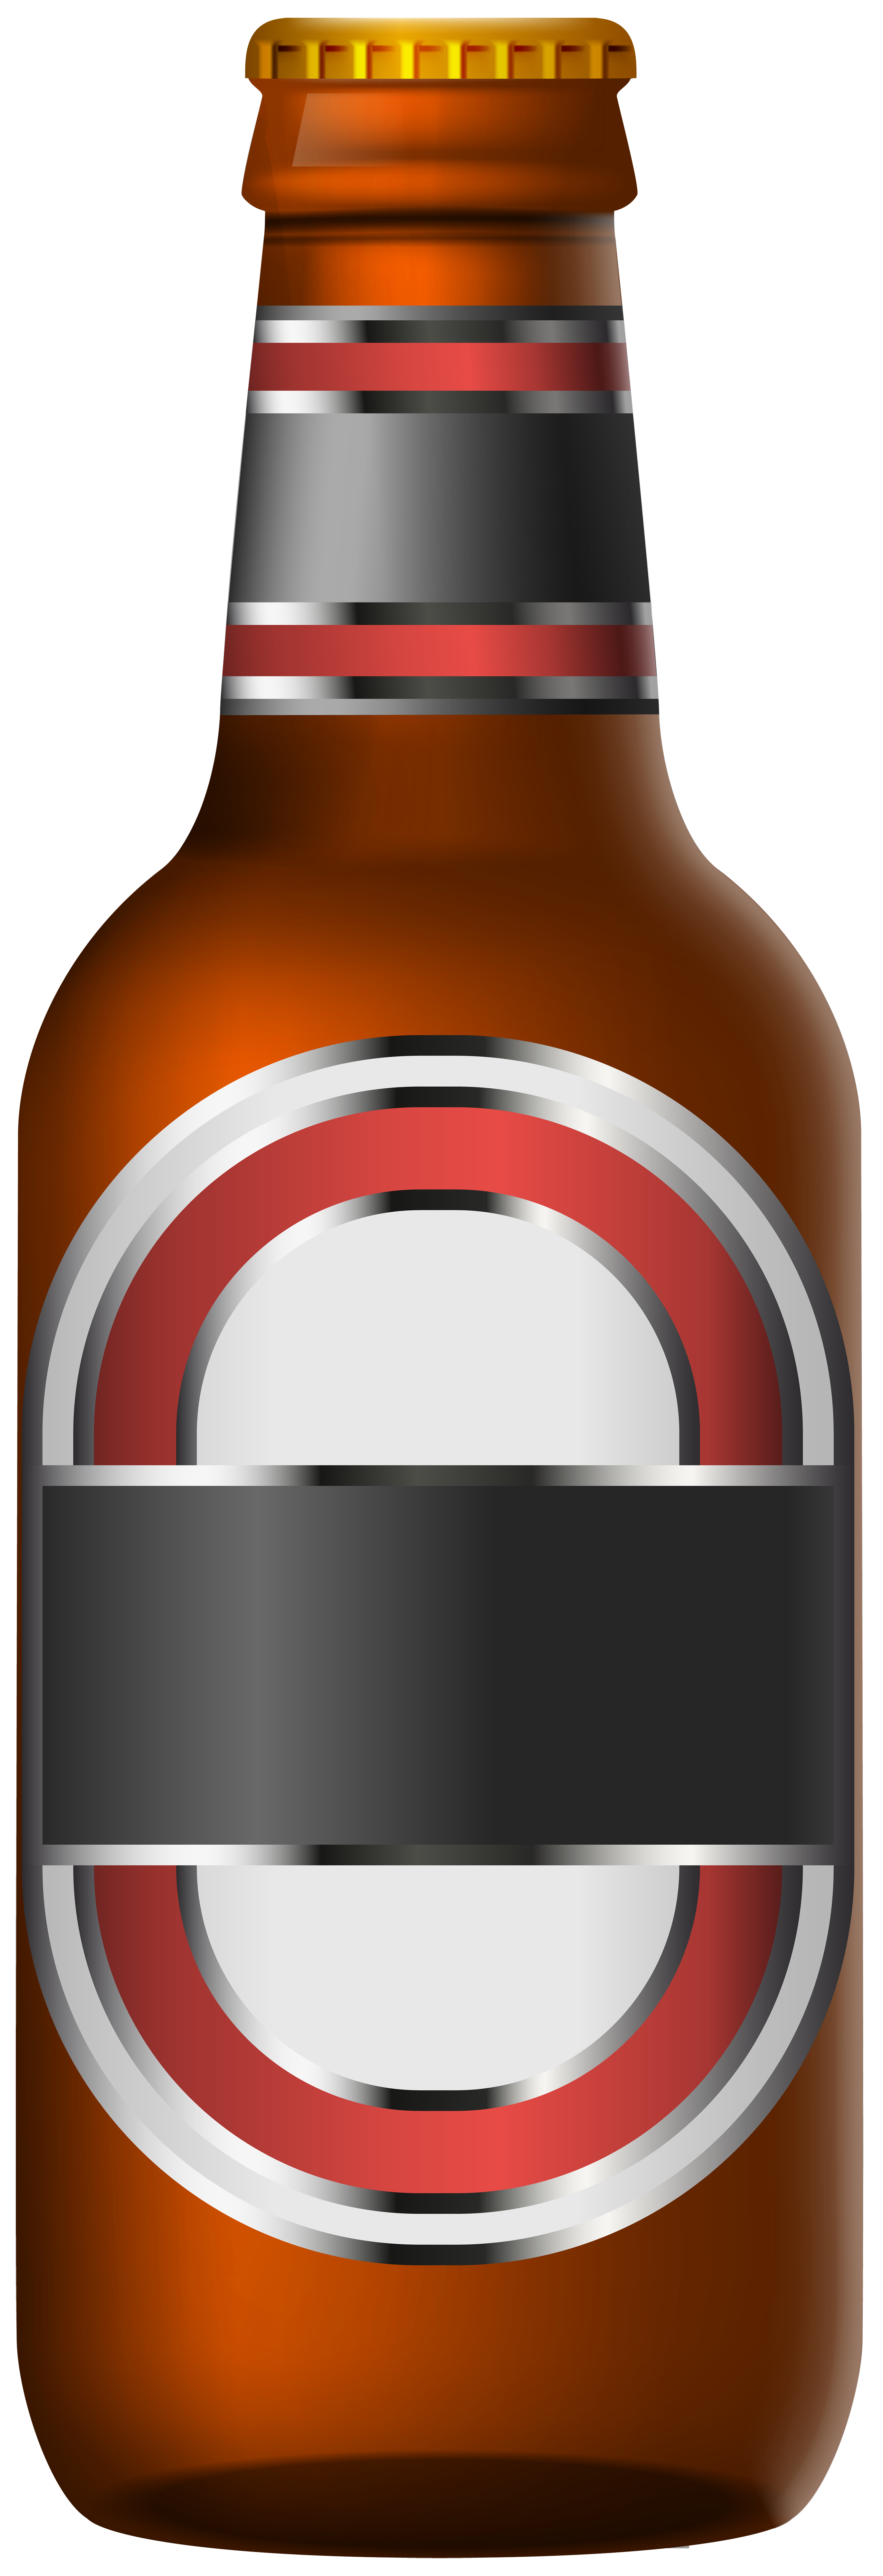 Beer Transparent Bottle Schwarzbier PNG Image High Quality Clipart